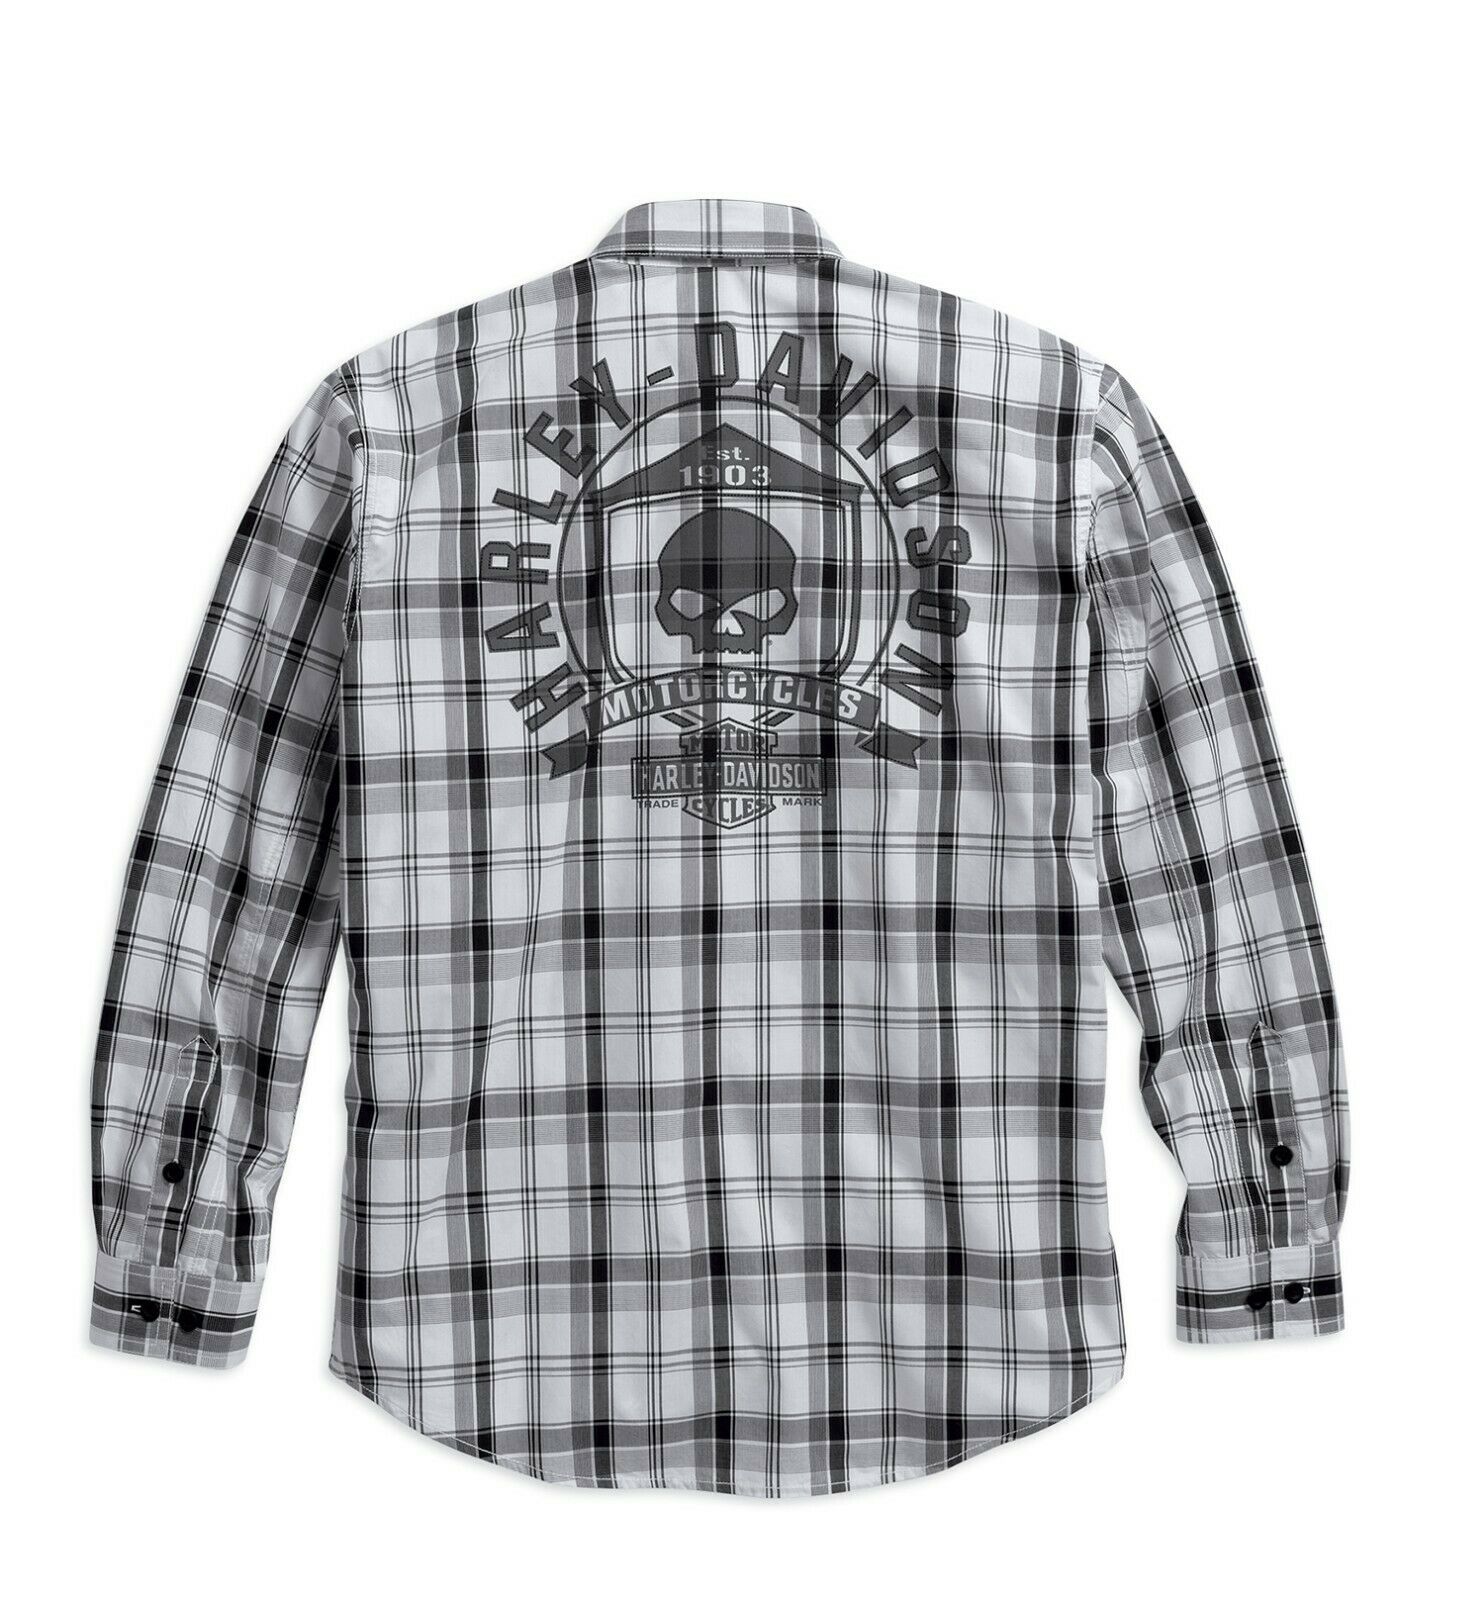 Harley-Davidson Men's Skull Shield Plaid Shirt - 99008-16VM